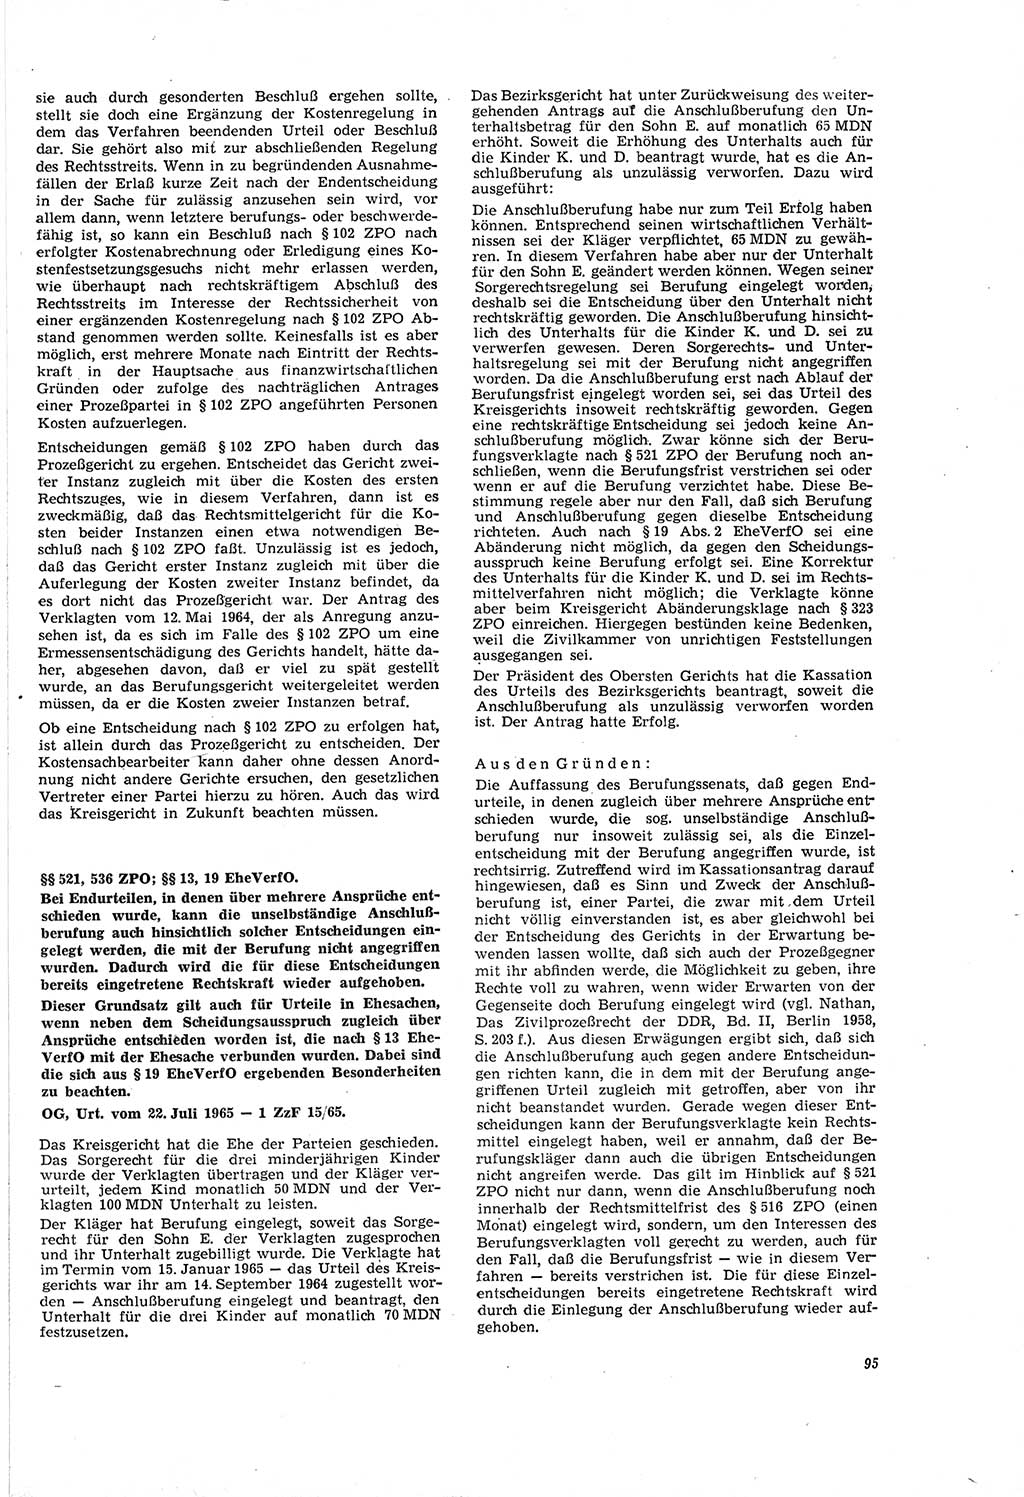 Neue Justiz (NJ), Zeitschrift für Recht und Rechtswissenschaft [Deutsche Demokratische Republik (DDR)], 20. Jahrgang 1966, Seite 95 (NJ DDR 1966, S. 95)